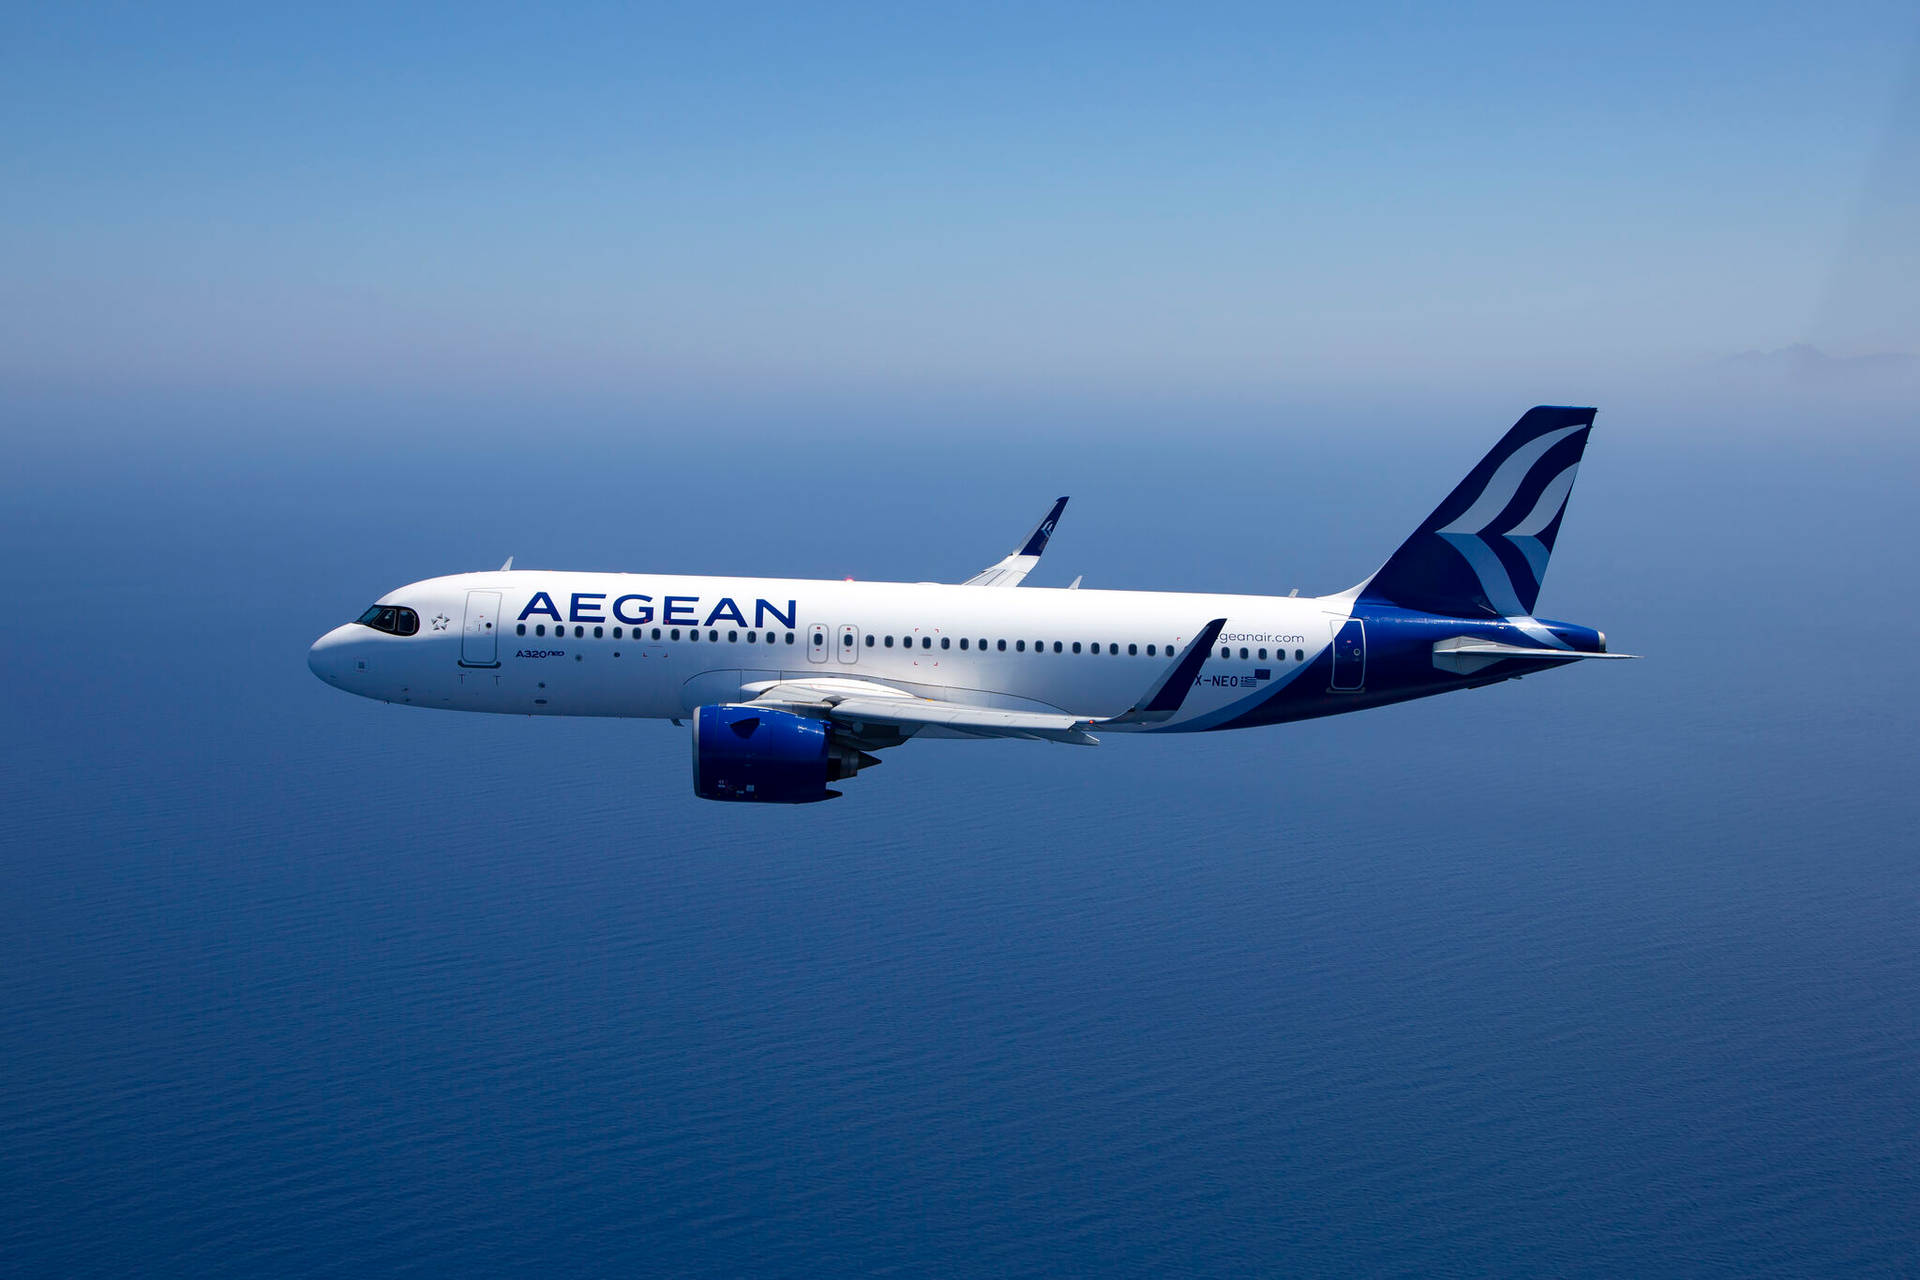 Ilmaestoso Aegean Airlines A320neo Jet Prende Il Volo Contro Il Cielo Azzurro Sfondo